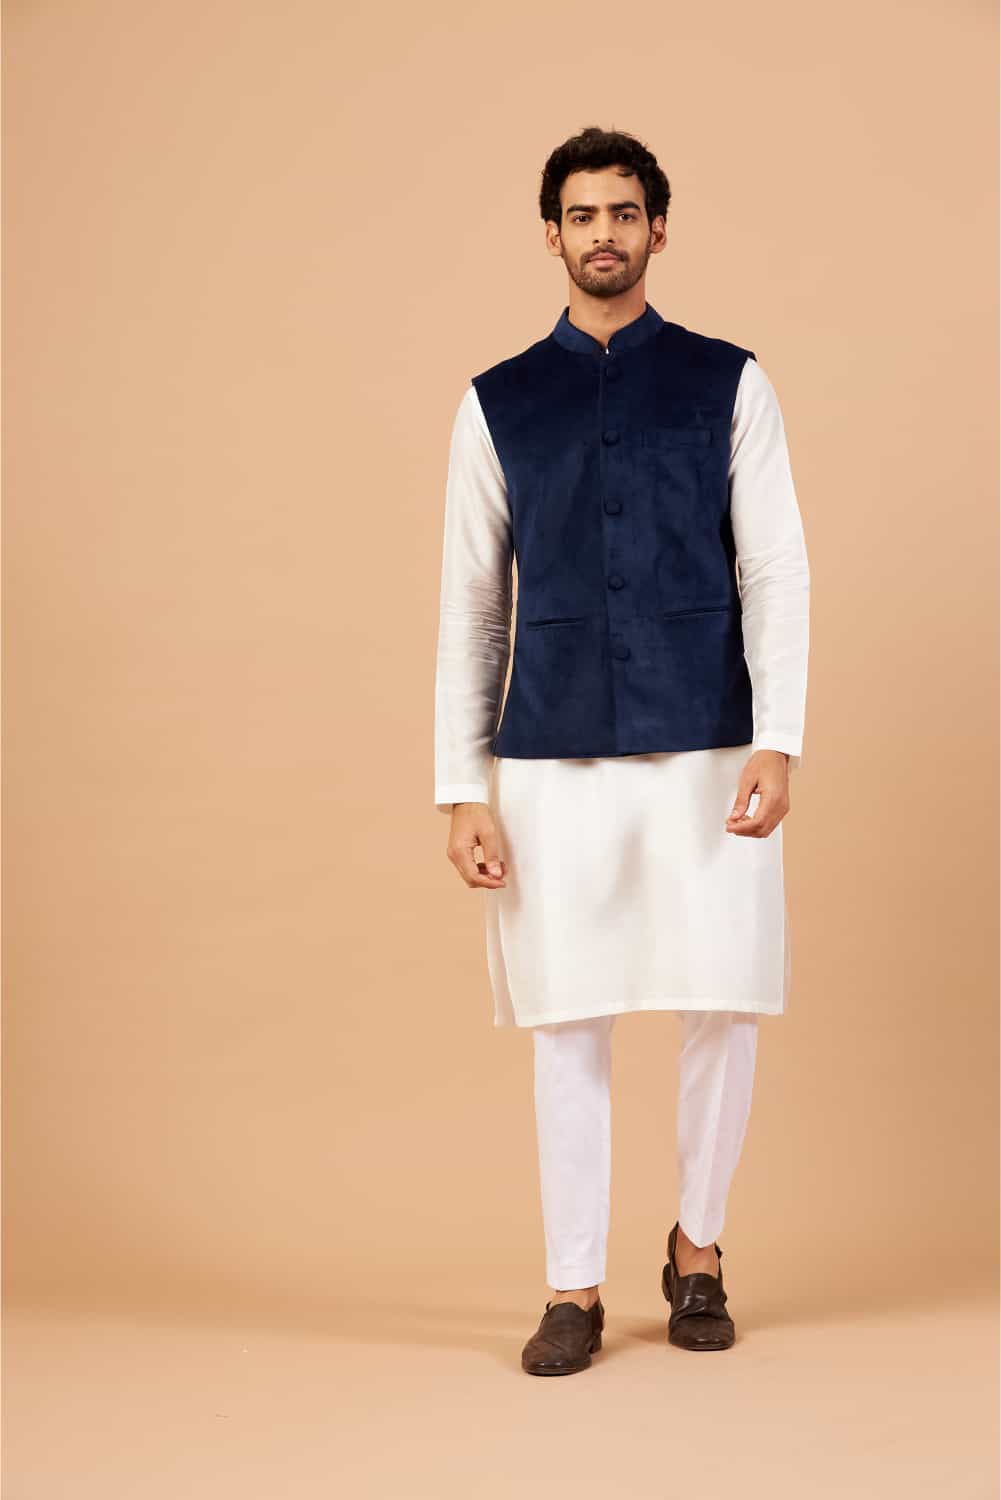 Buy Badoliya & Sons Designer Nehru Jacket for Men's (Navy Blue)-36 at  Amazon.in